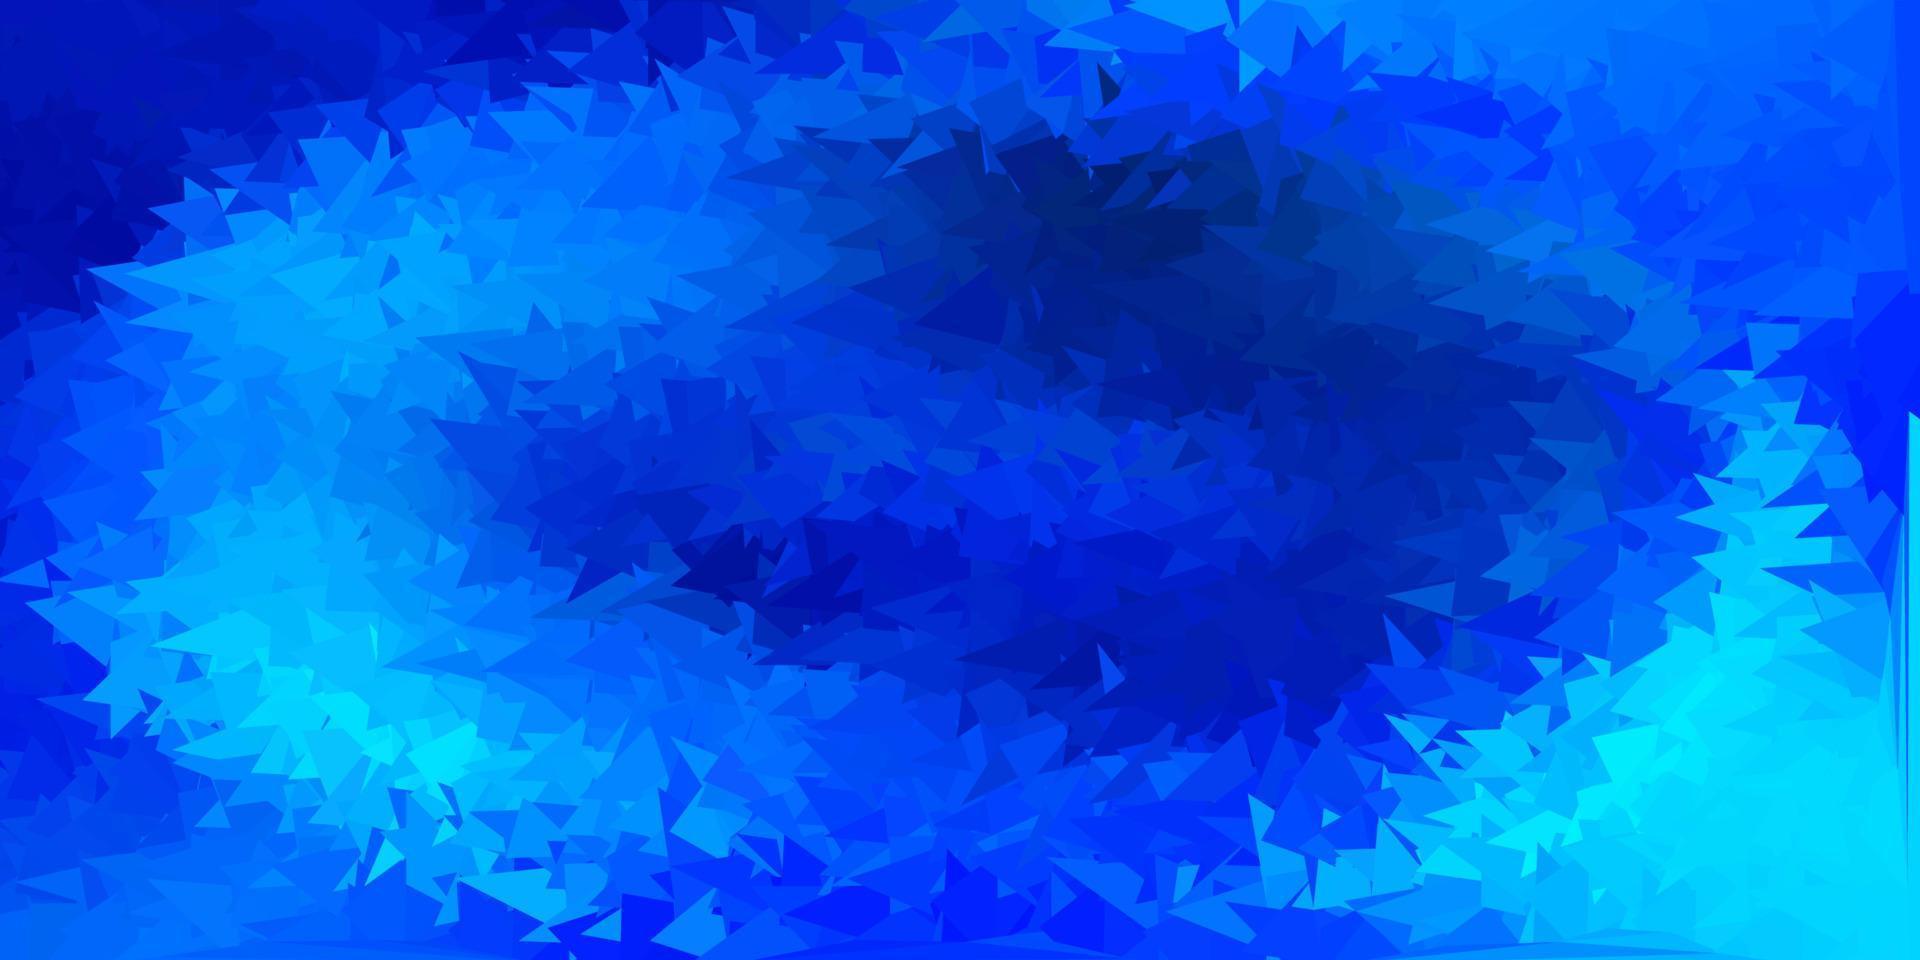 azul claro padrão de mosaico do triângulo do vetor. vetor